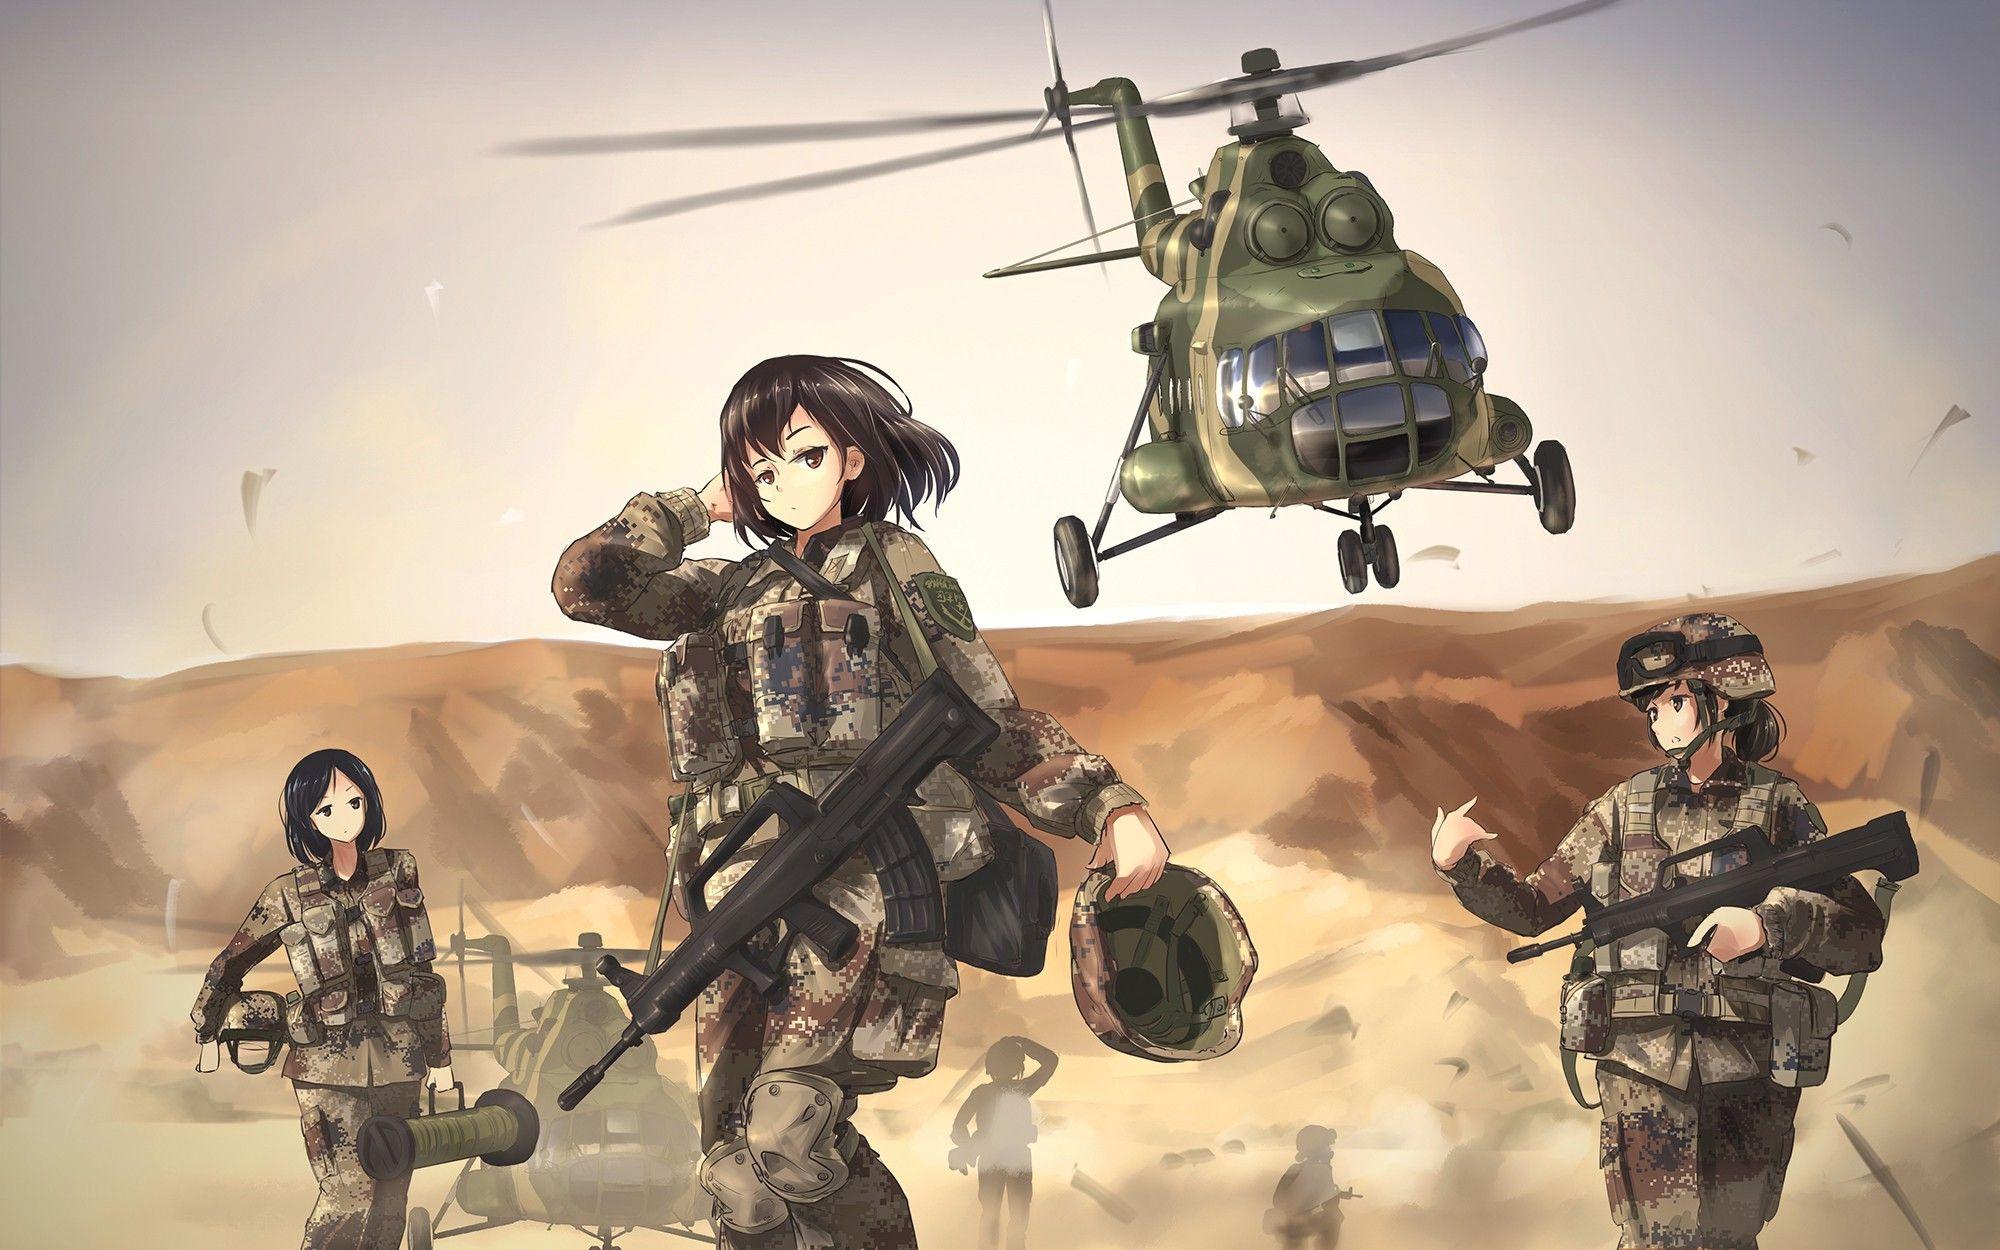 Wallpaper, women, anime girls, weapon, aircraft, soldier